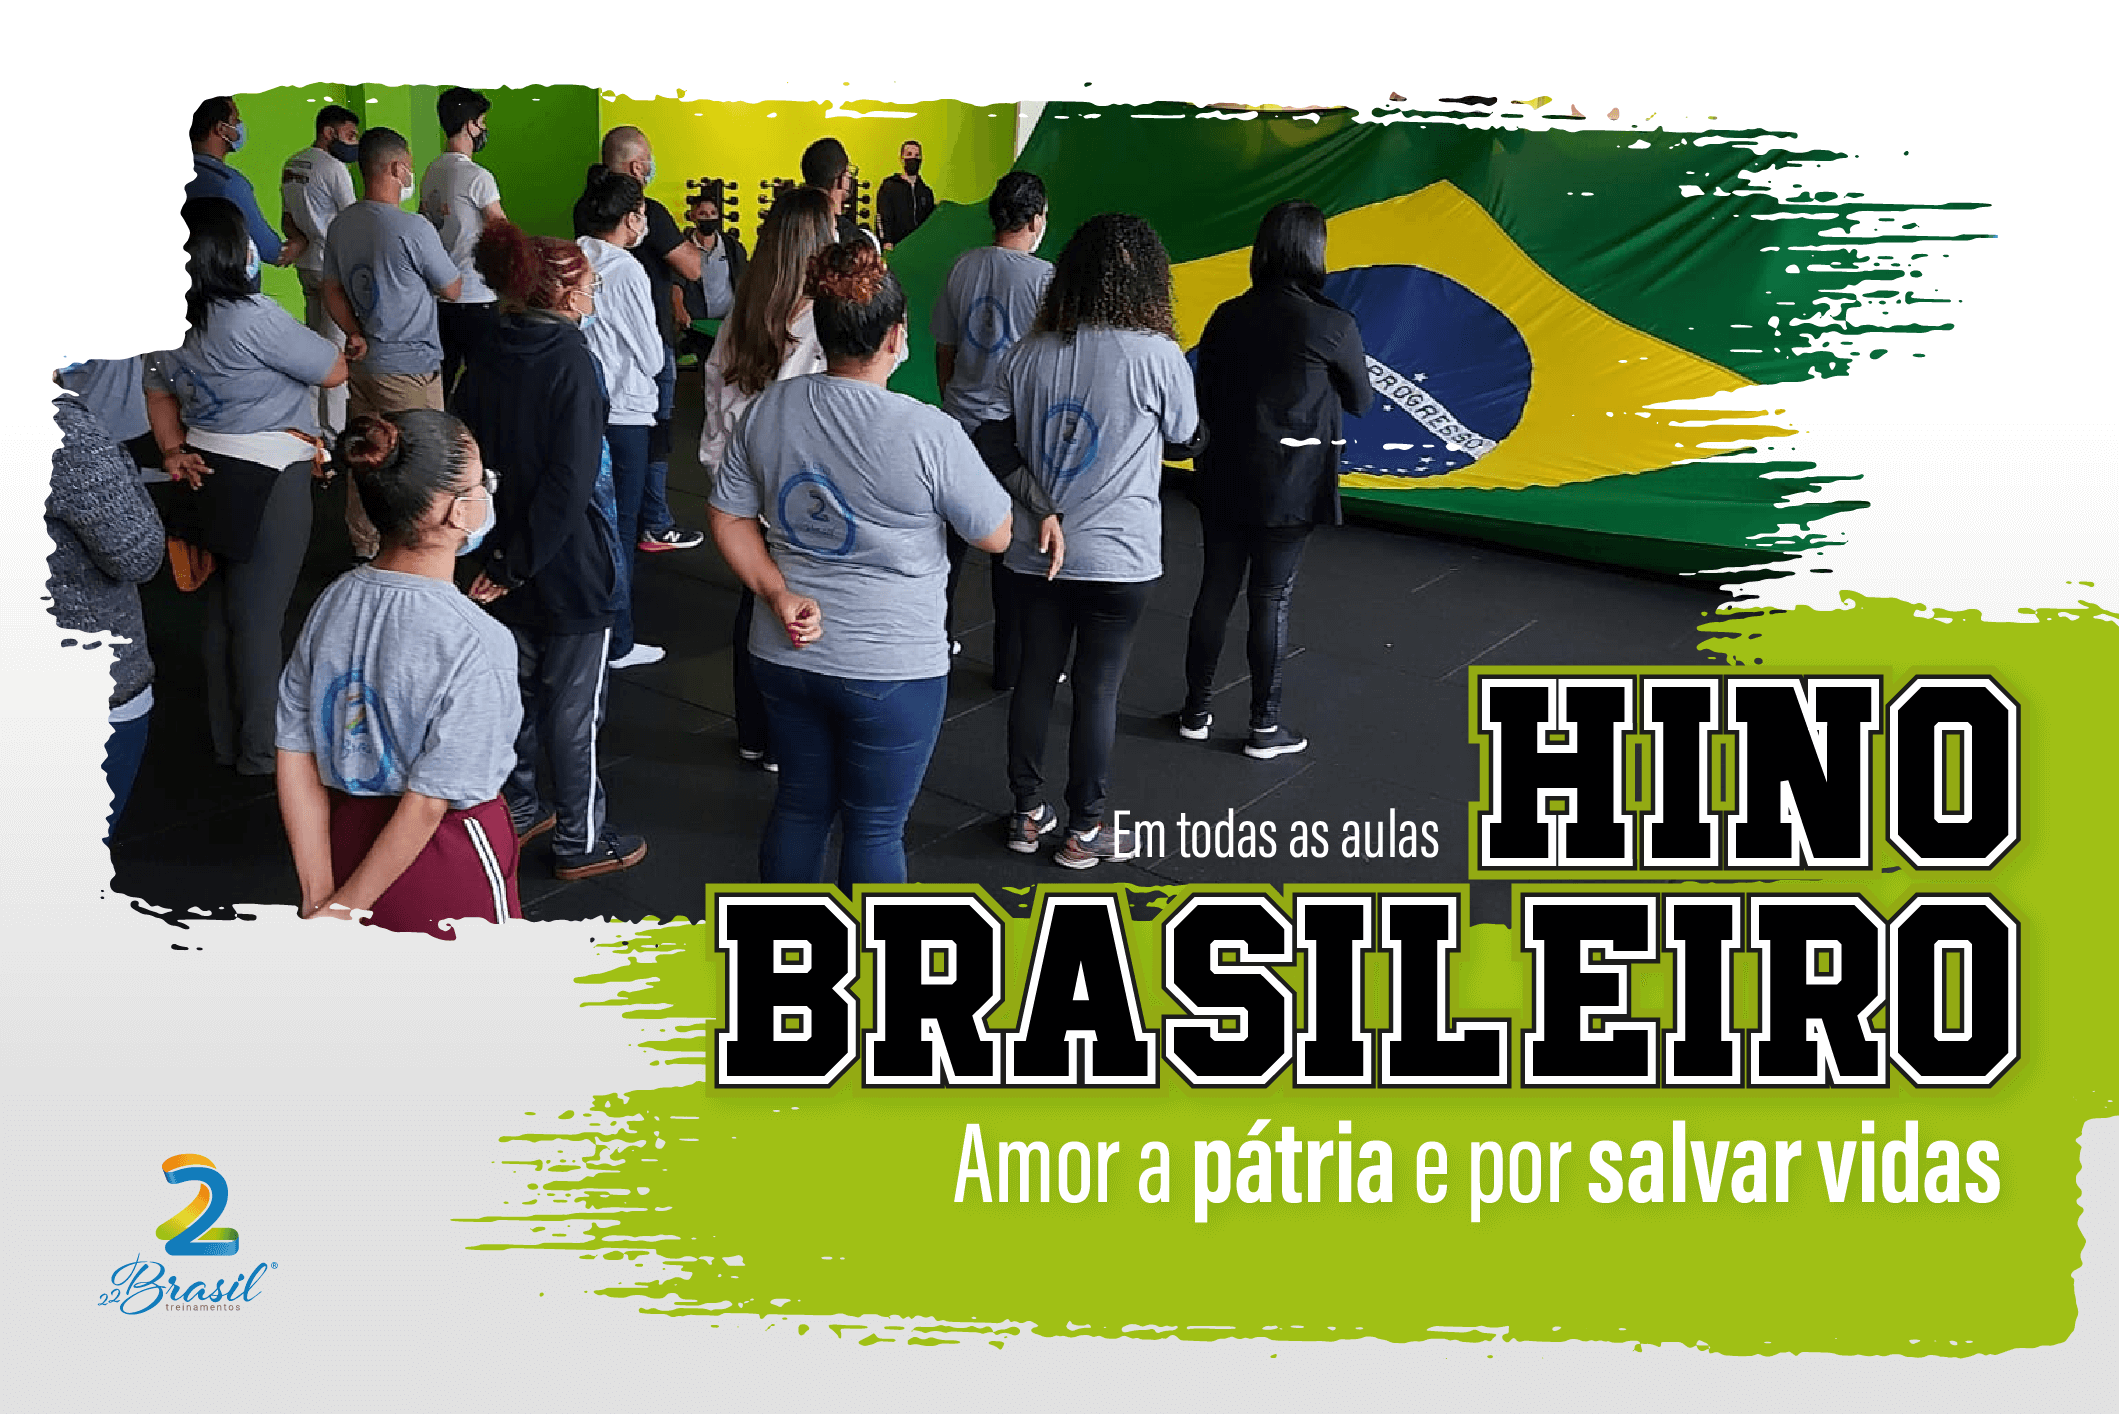 hino nacional brasileiro, hino brasileiro, hino nacional, 22brasil treinamentos